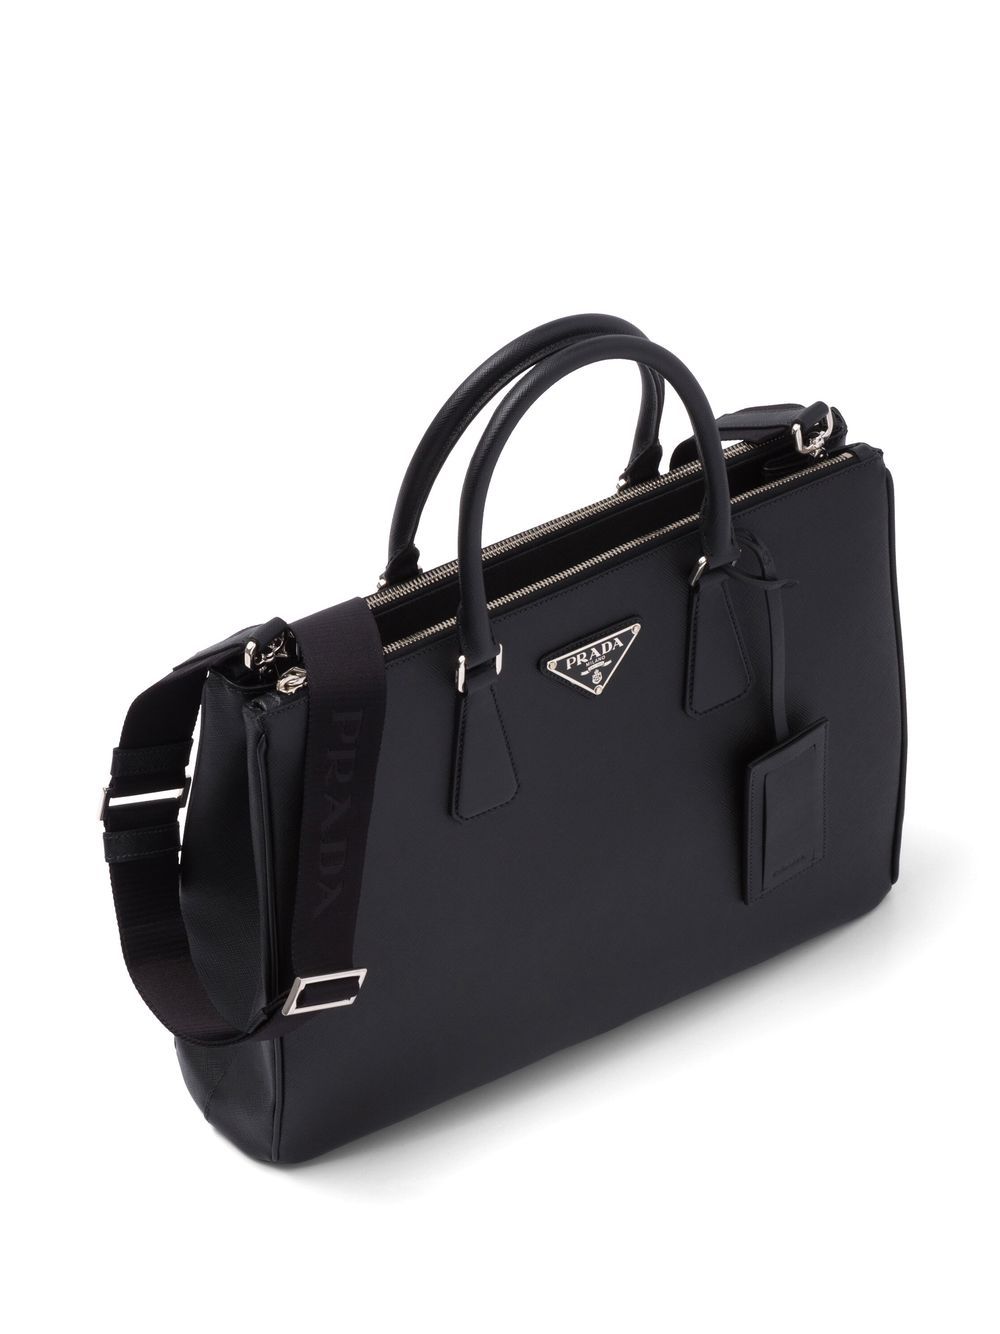 Prada - Galleria Tote Bag - Men - Leather - Os - Black